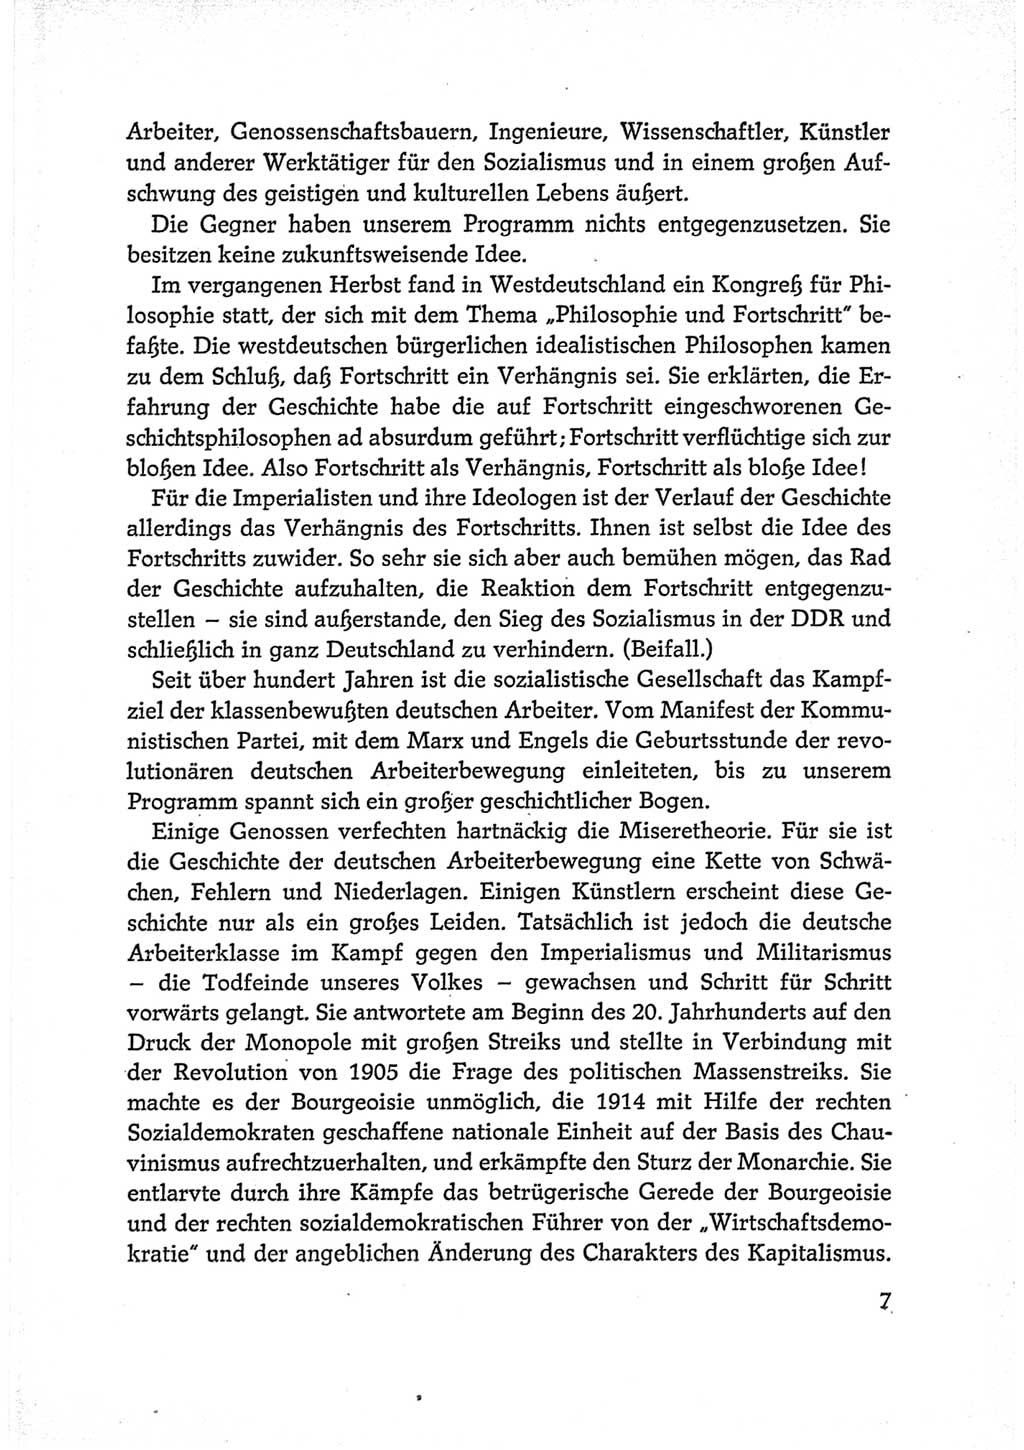 Protokoll der Verhandlungen des Ⅵ. Parteitages der Sozialistischen Einheitspartei Deutschlands (SED) [Deutsche Demokratische Republik (DDR)] 1963, Band Ⅱ, Seite 7 (Prot. Verh. Ⅵ. PT SED DDR 1963, Bd. Ⅱ, S. 7)